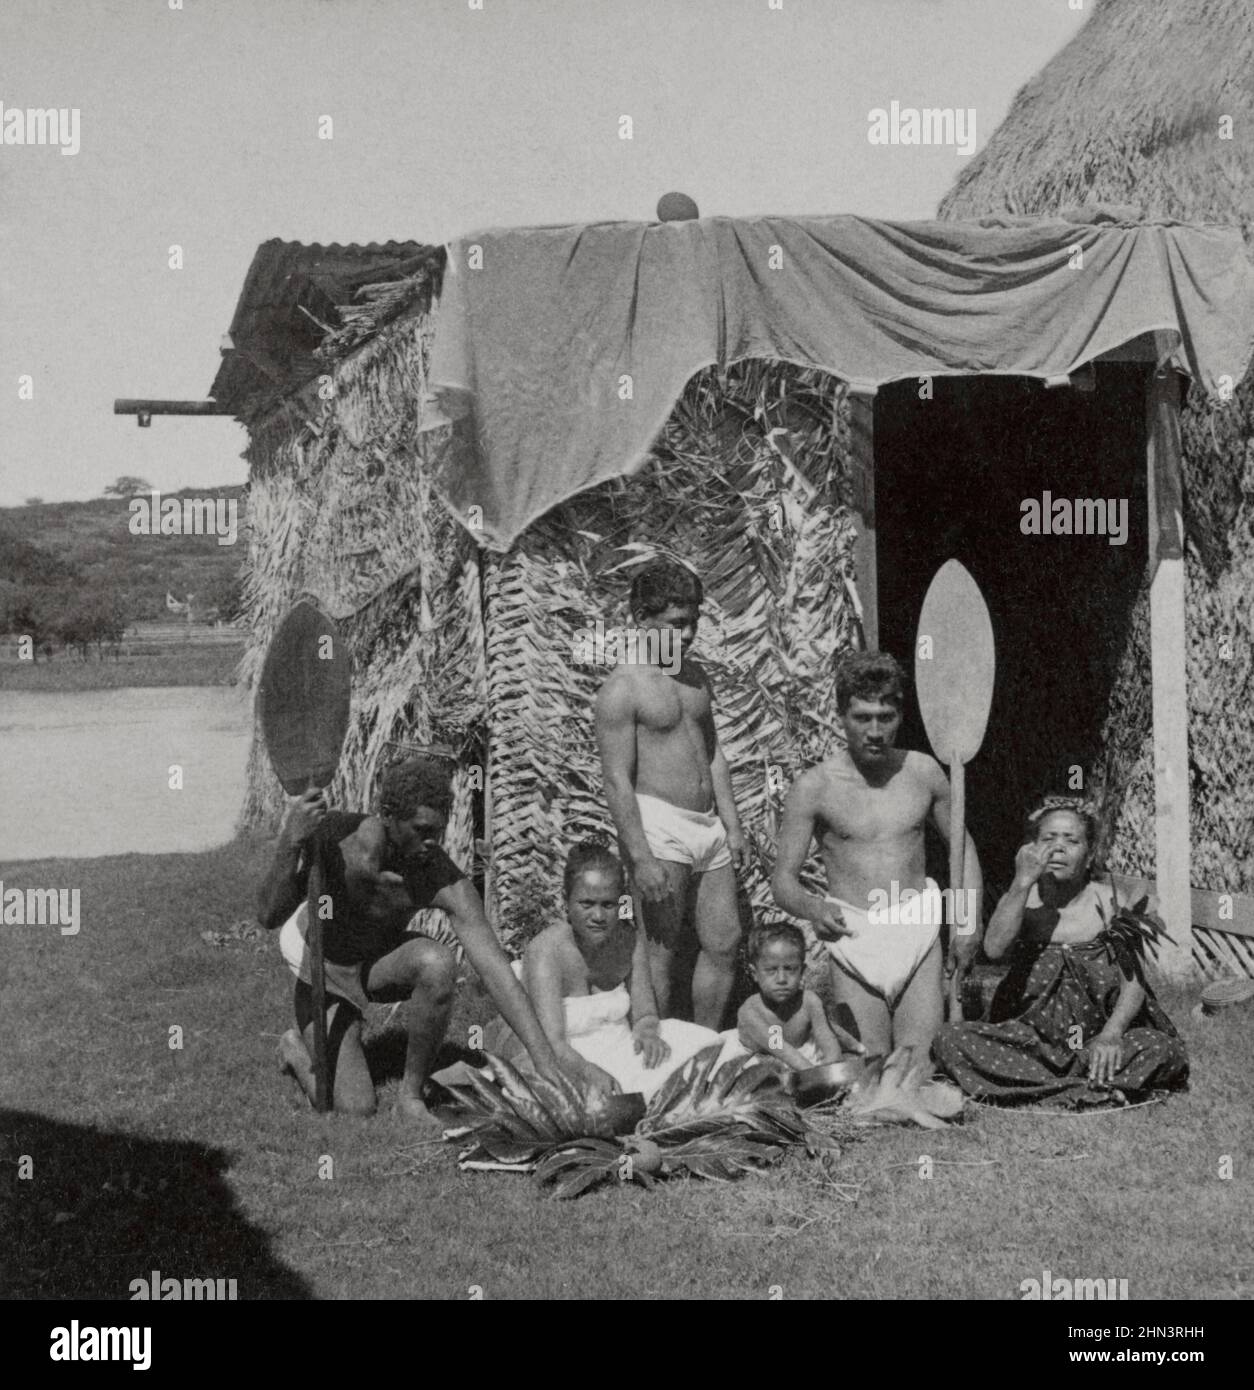 Foto vintage del grupo de nativos Kanaka Maoli comiendo poi, islas hawaianas (frente a la cabaña de césped). 1896 Los nativos hawaianos son la Polinesia Indígena Foto de stock